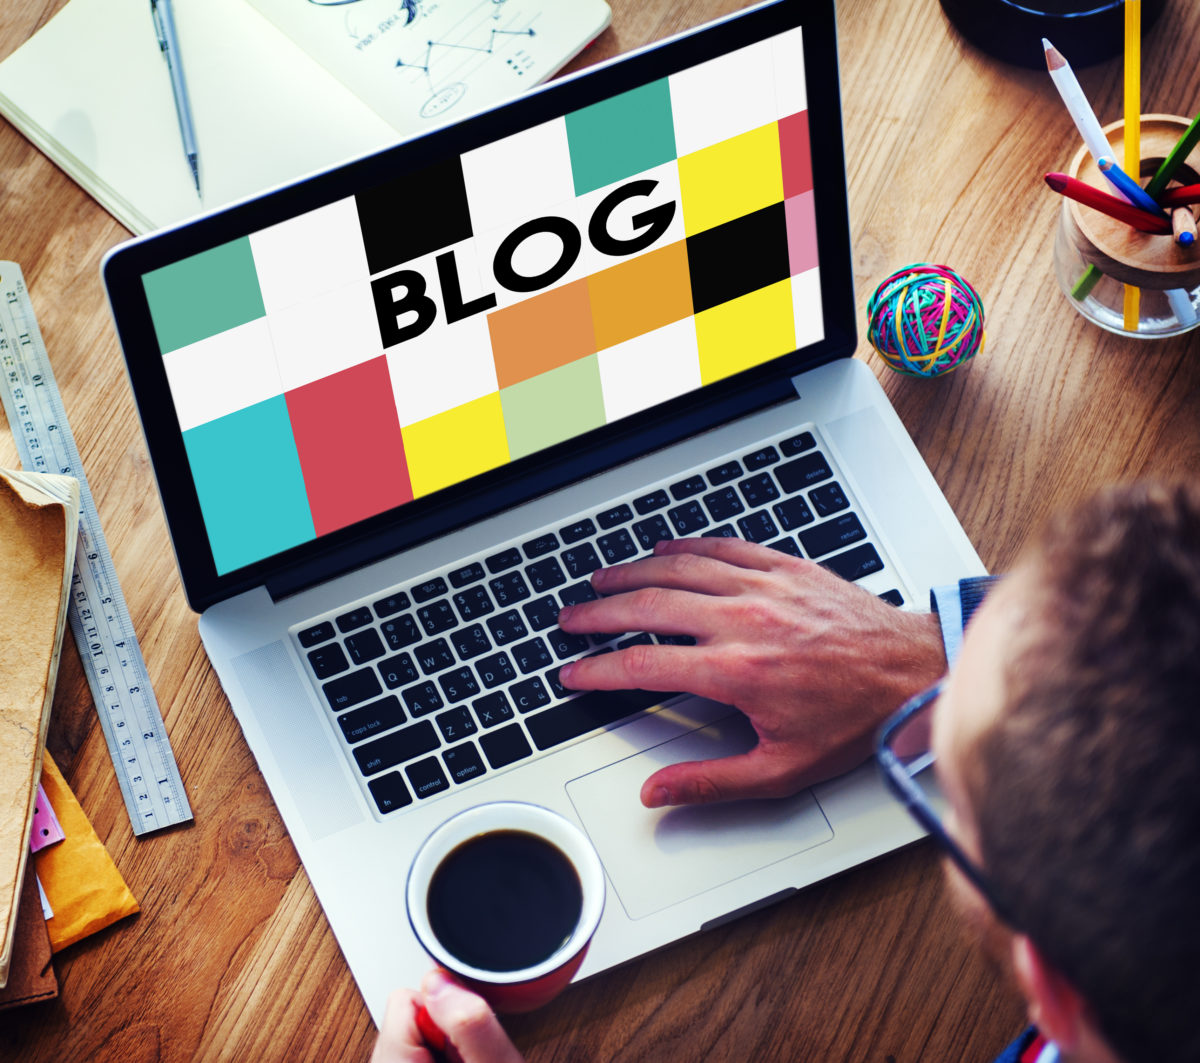 Comment faire pour avoir un blog professionnel - SMMA LEAD 